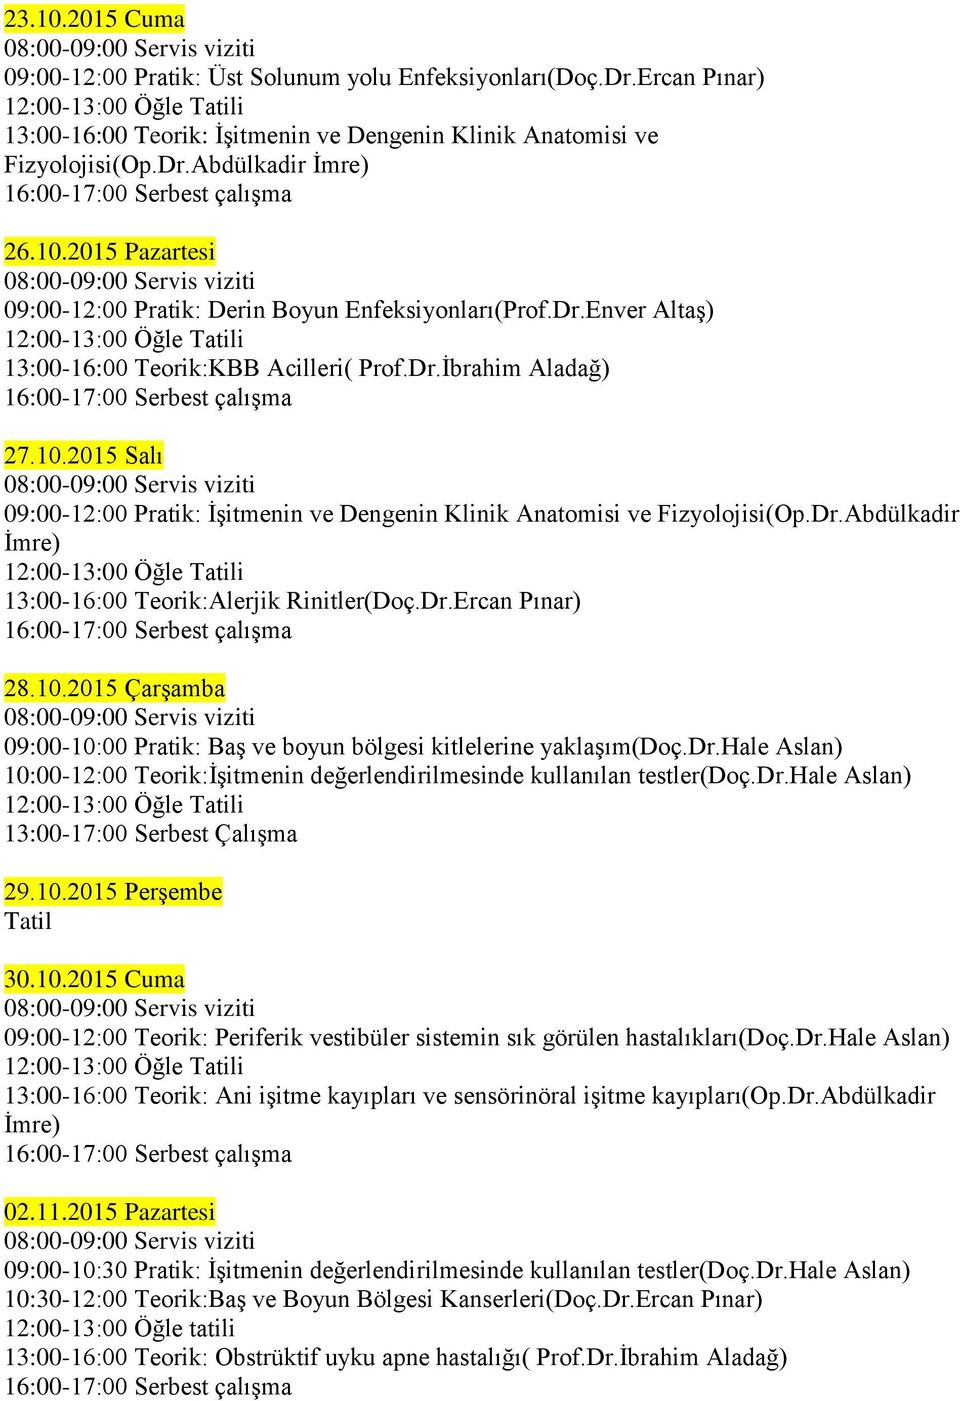 Dr.Ercan Pınar) 28.10.2015 Çarşamba 09:00-10:00 Pratik: Baş ve boyun bölgesi kitlelerine yaklaşım(doç.dr.hale Aslan) 10:00-12:00 Teorik:İşitmenin değerlendirilmesinde kullanılan testler(doç.dr.hale Aslan) 29.